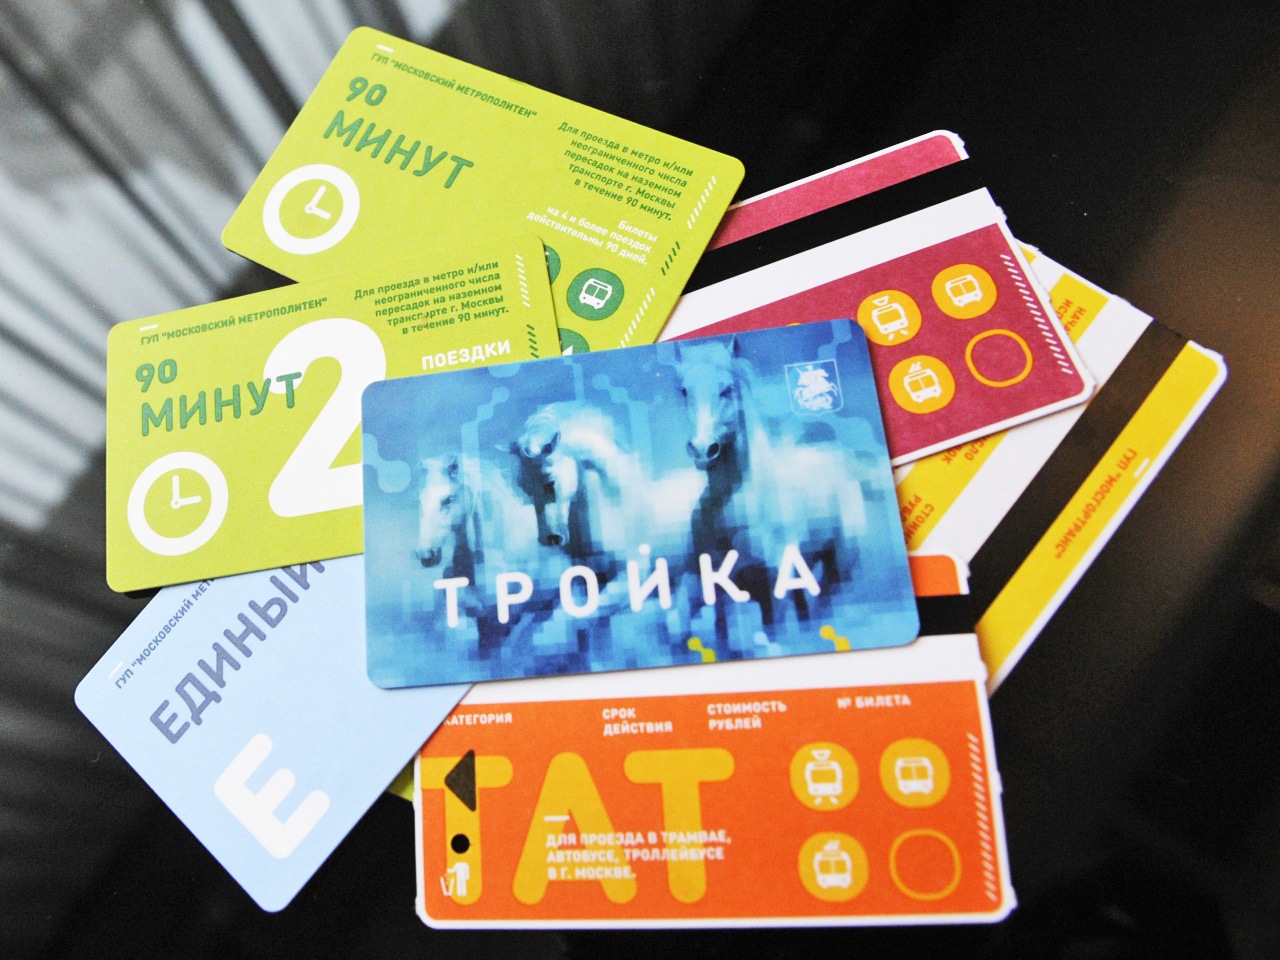 В сентябре москвичи начнут пользоваться единым билетом на метро, автобус и электричку 